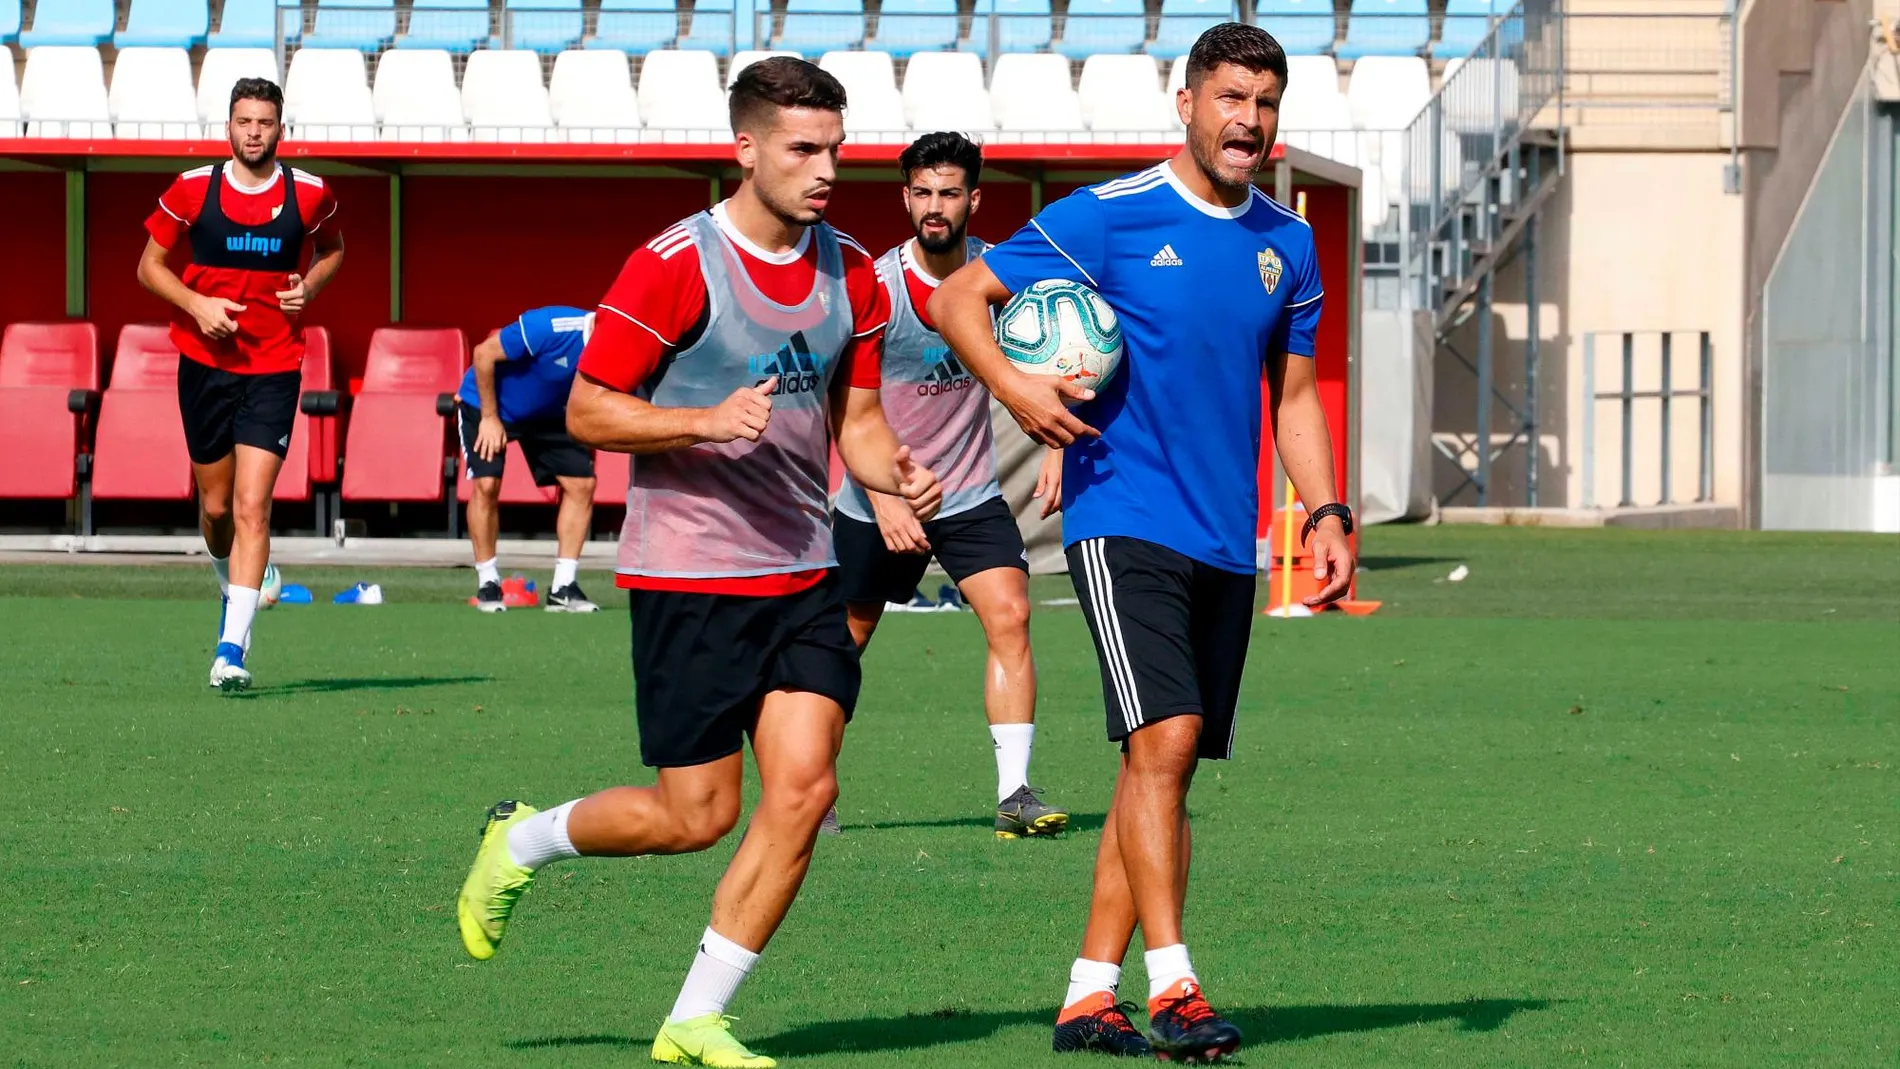 El portugués Pedro Enmanuel (d) nuevo entrenador de la UD Almería, este lunes, durante su primer entrenamiento con el equipo tras la llegada del nuevo dueño el jeque árabe, Turki Al-Sheikh / Foto: Efe